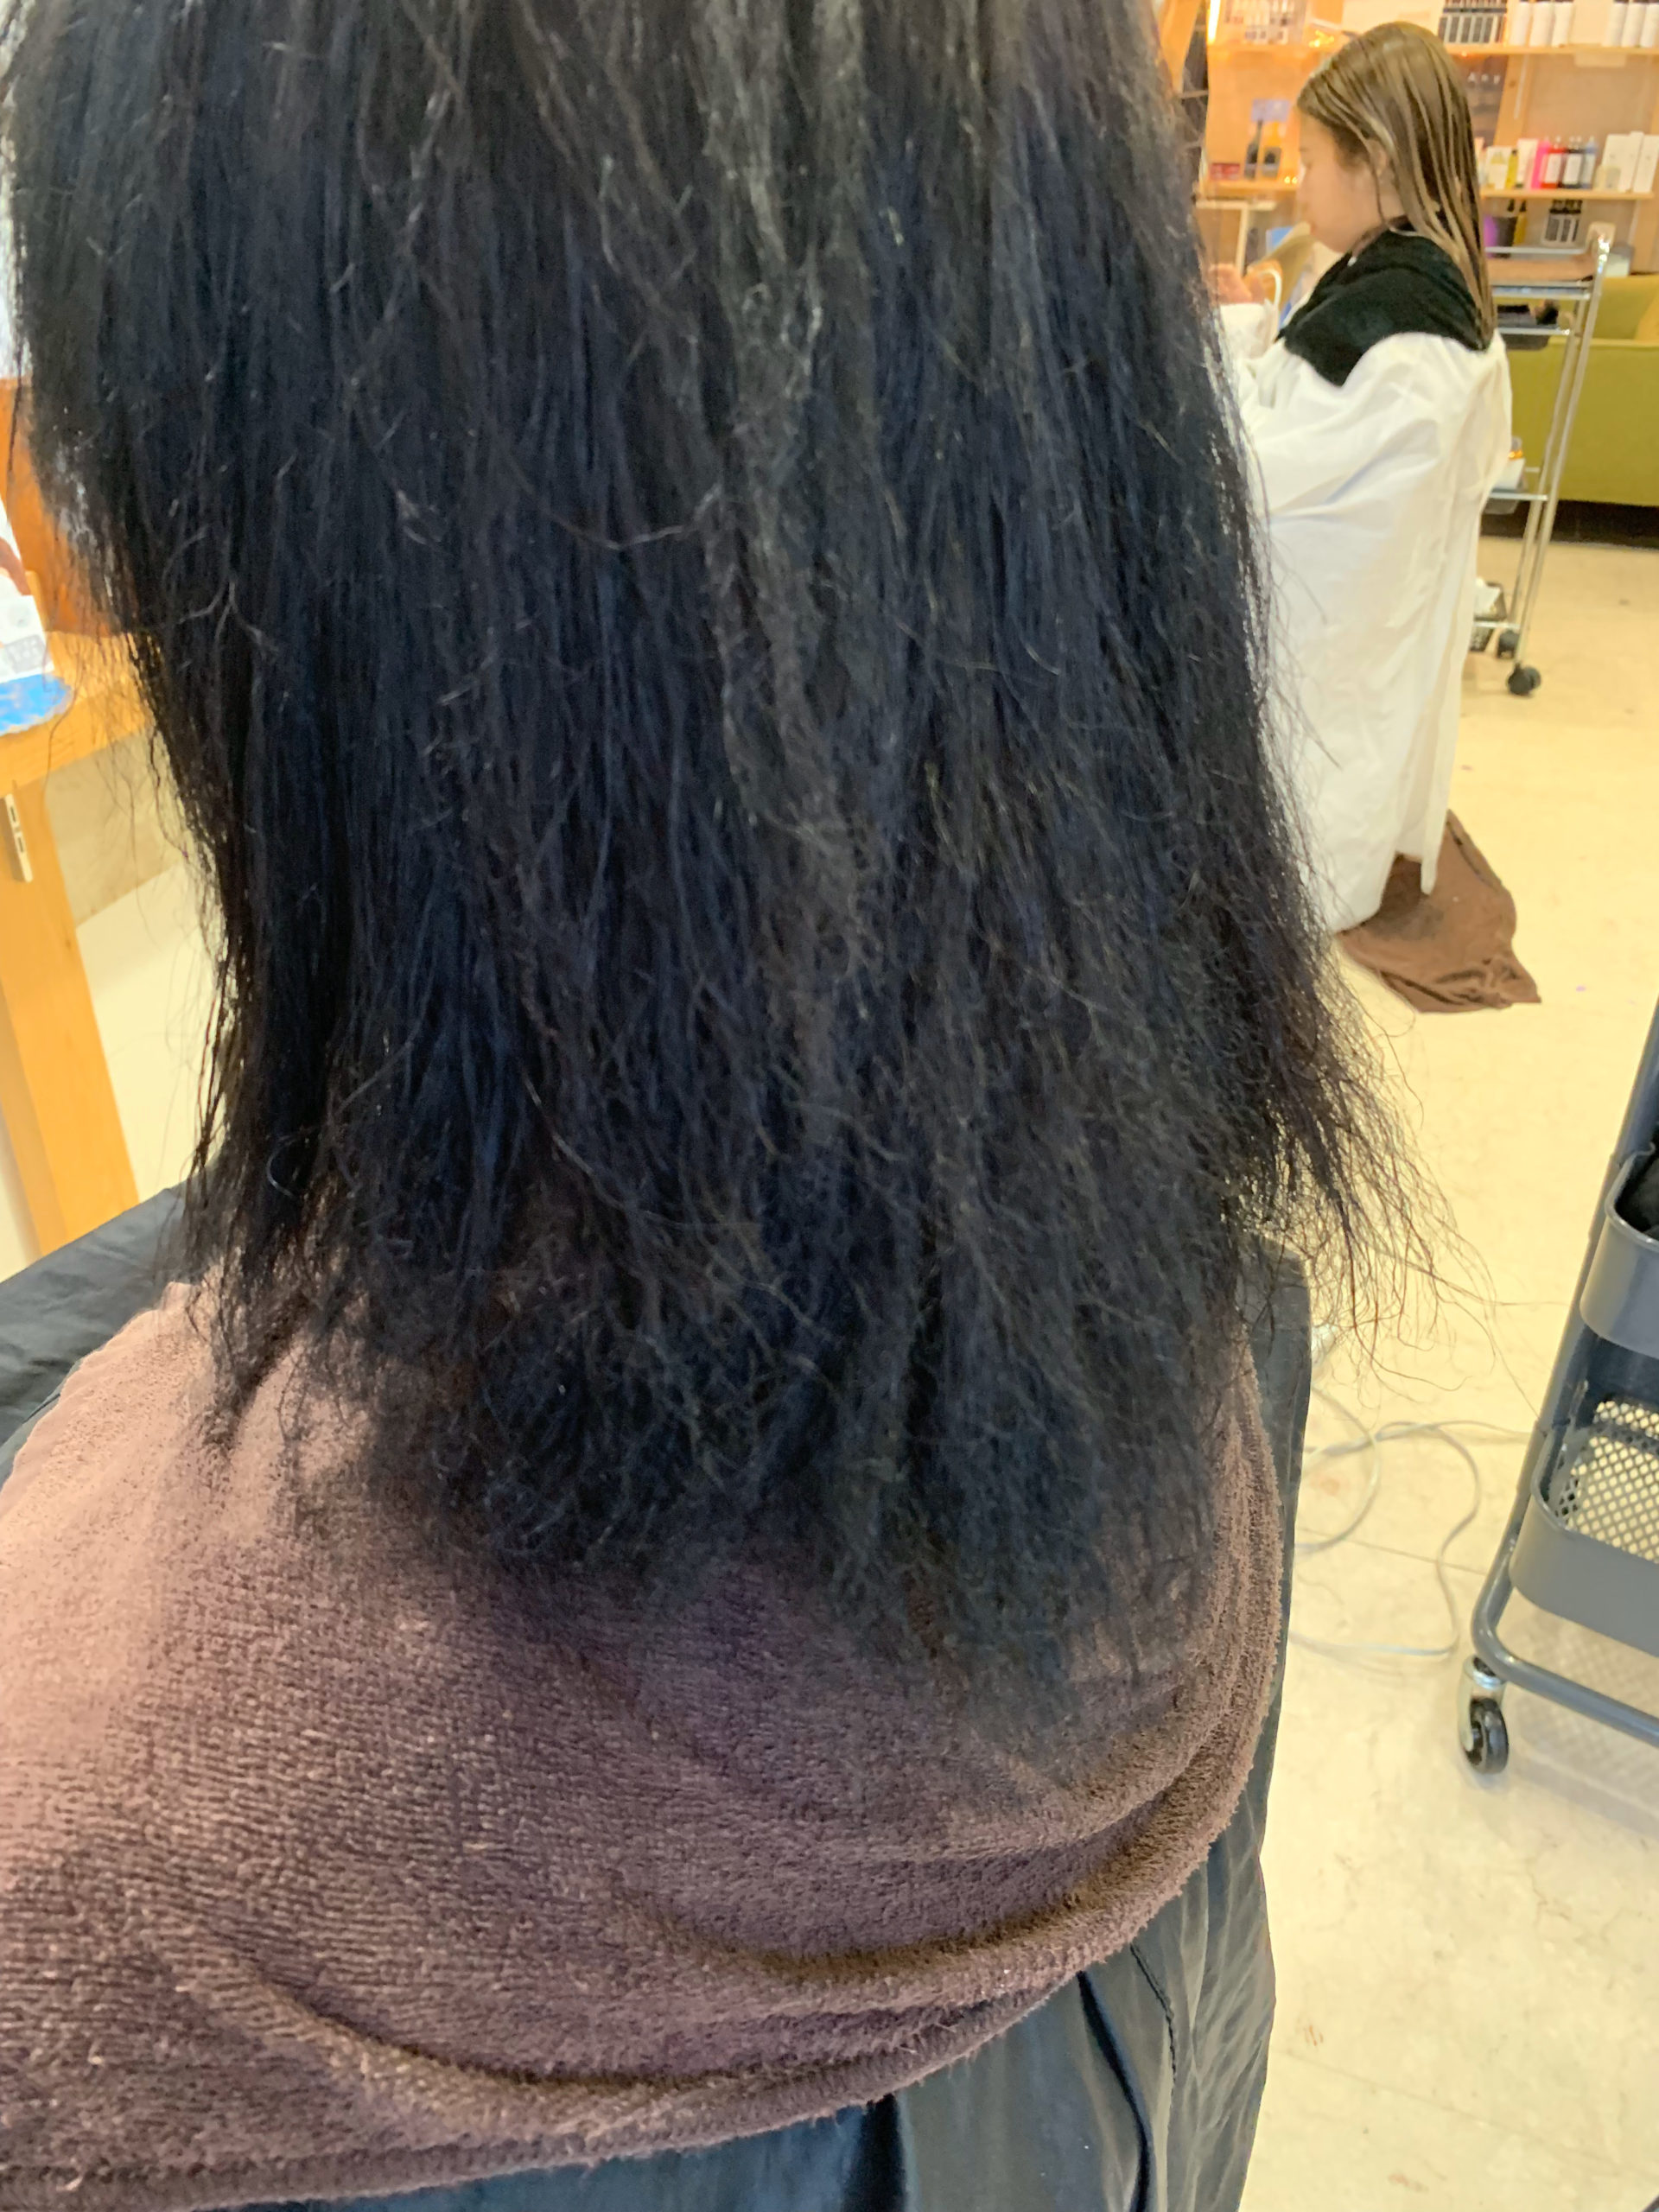 縮毛矯正で髪がチリチリに。。【ビビリ矯正】で直します。原宿・表参道『髪のお悩みを解決するヘアケア美容師の挑戦』